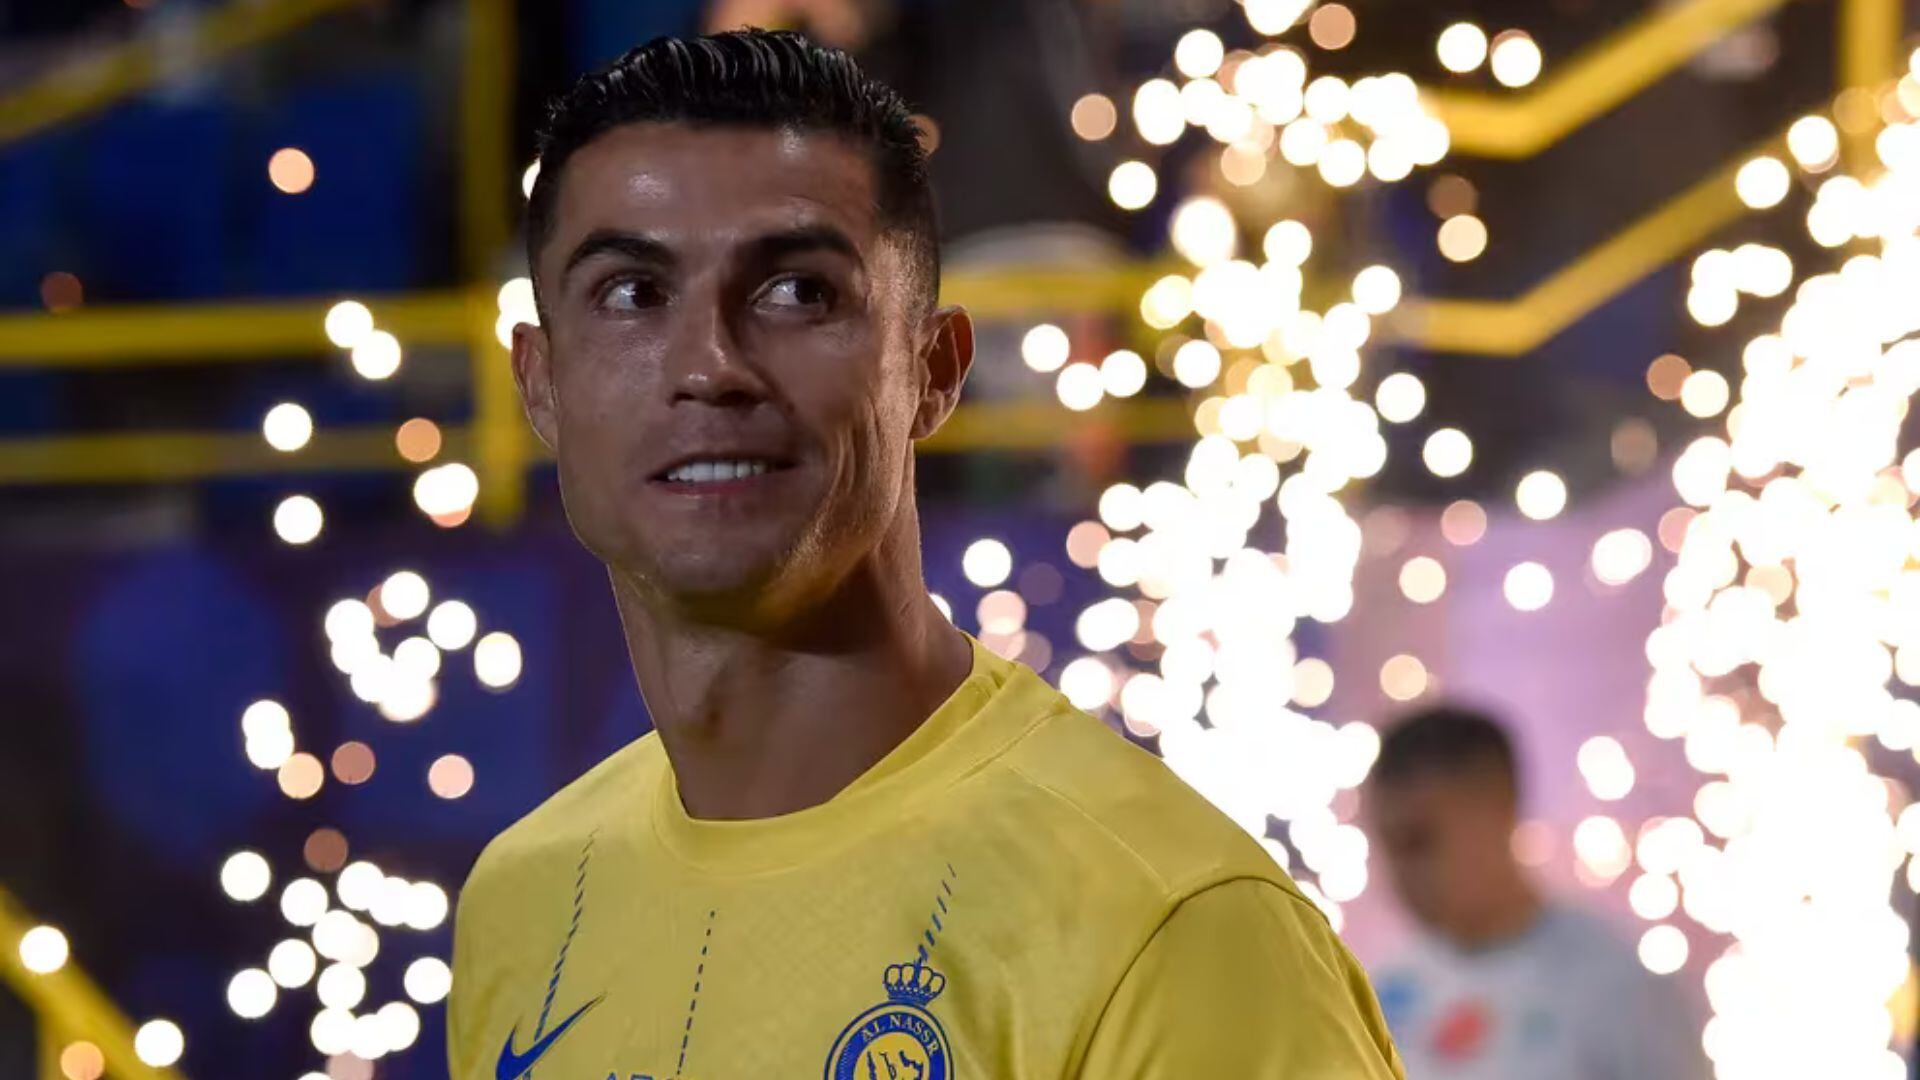 La extraña rutina que tiene Cristiano Ronaldo antes de irse a dormir en Arabia